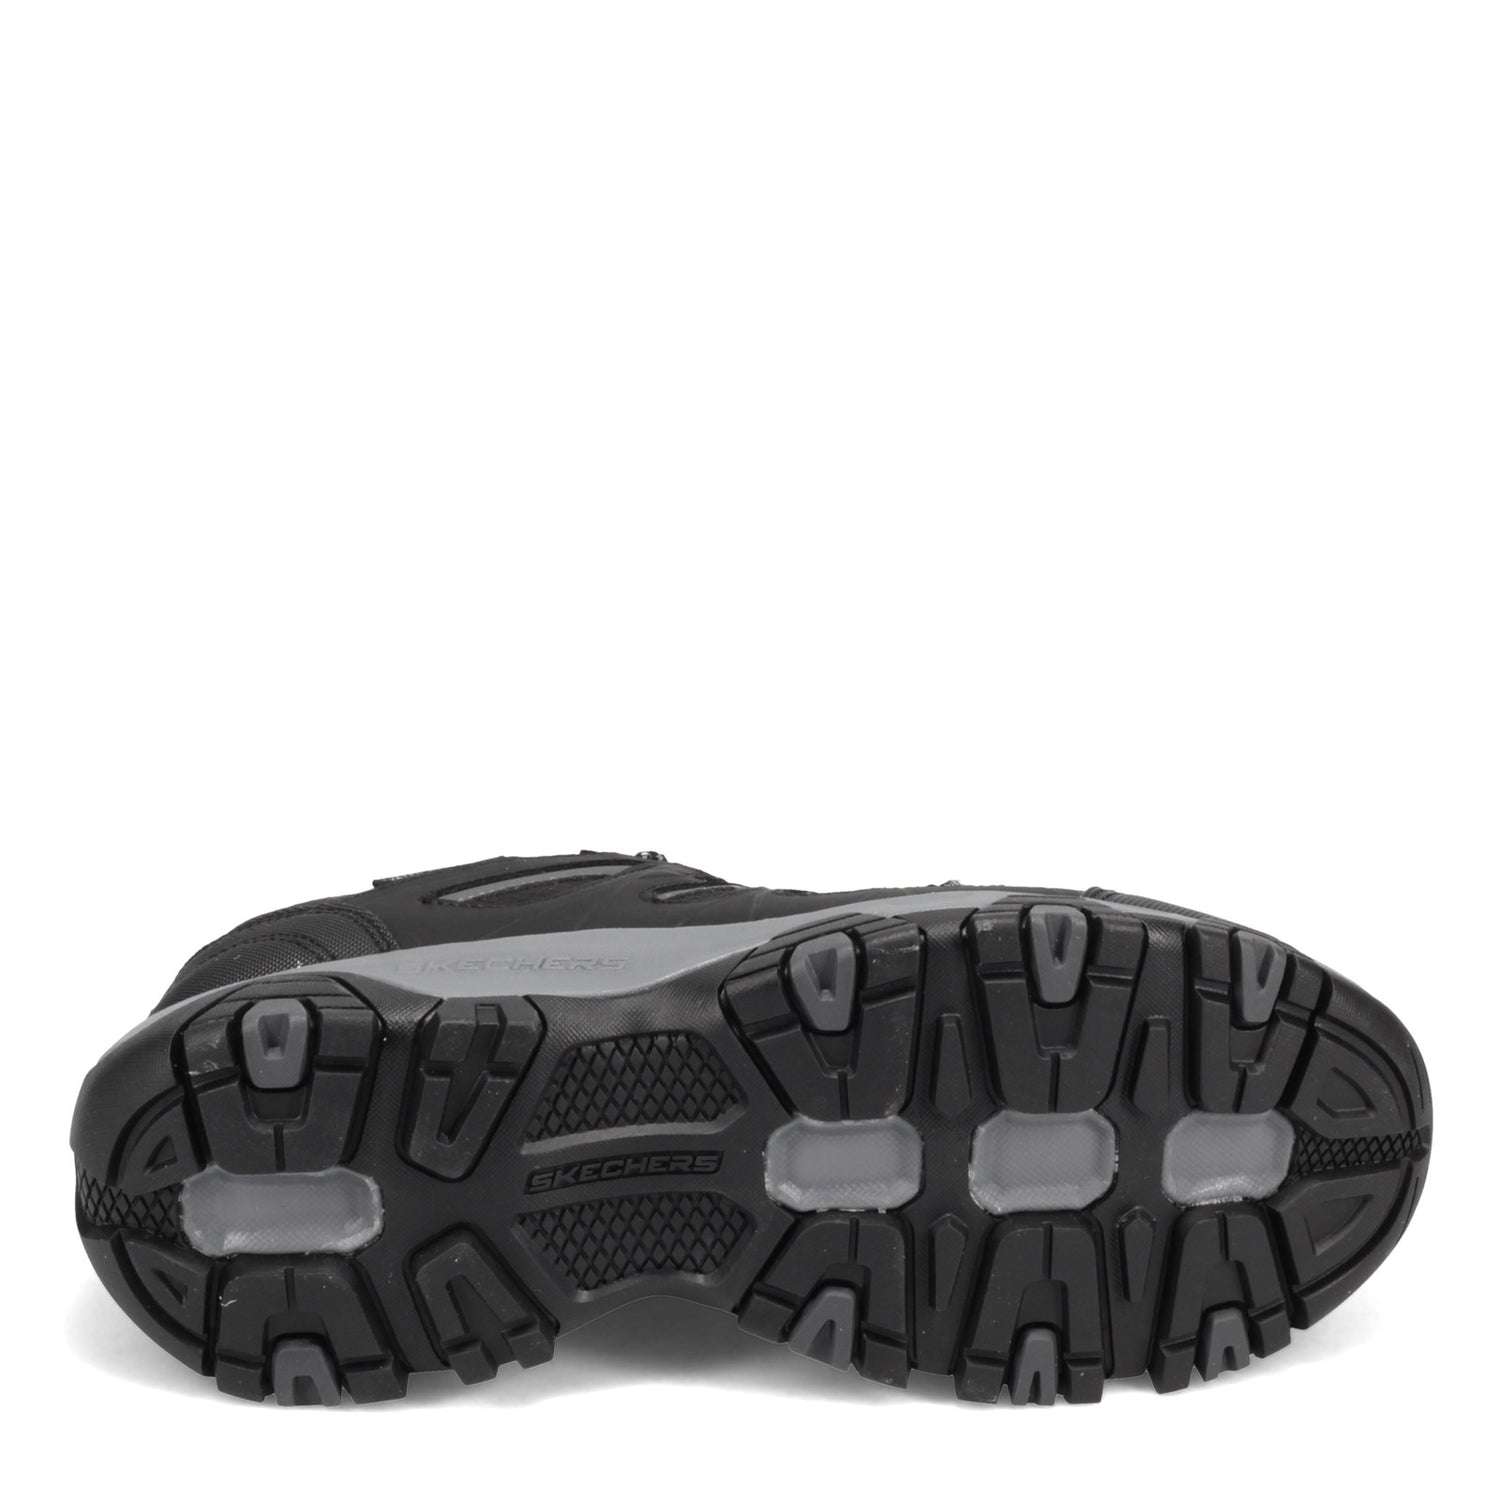 Peltz Shoes  Men's Skechers Terrabite Hiking Shoe Black/Charcoal 51844-BKCC